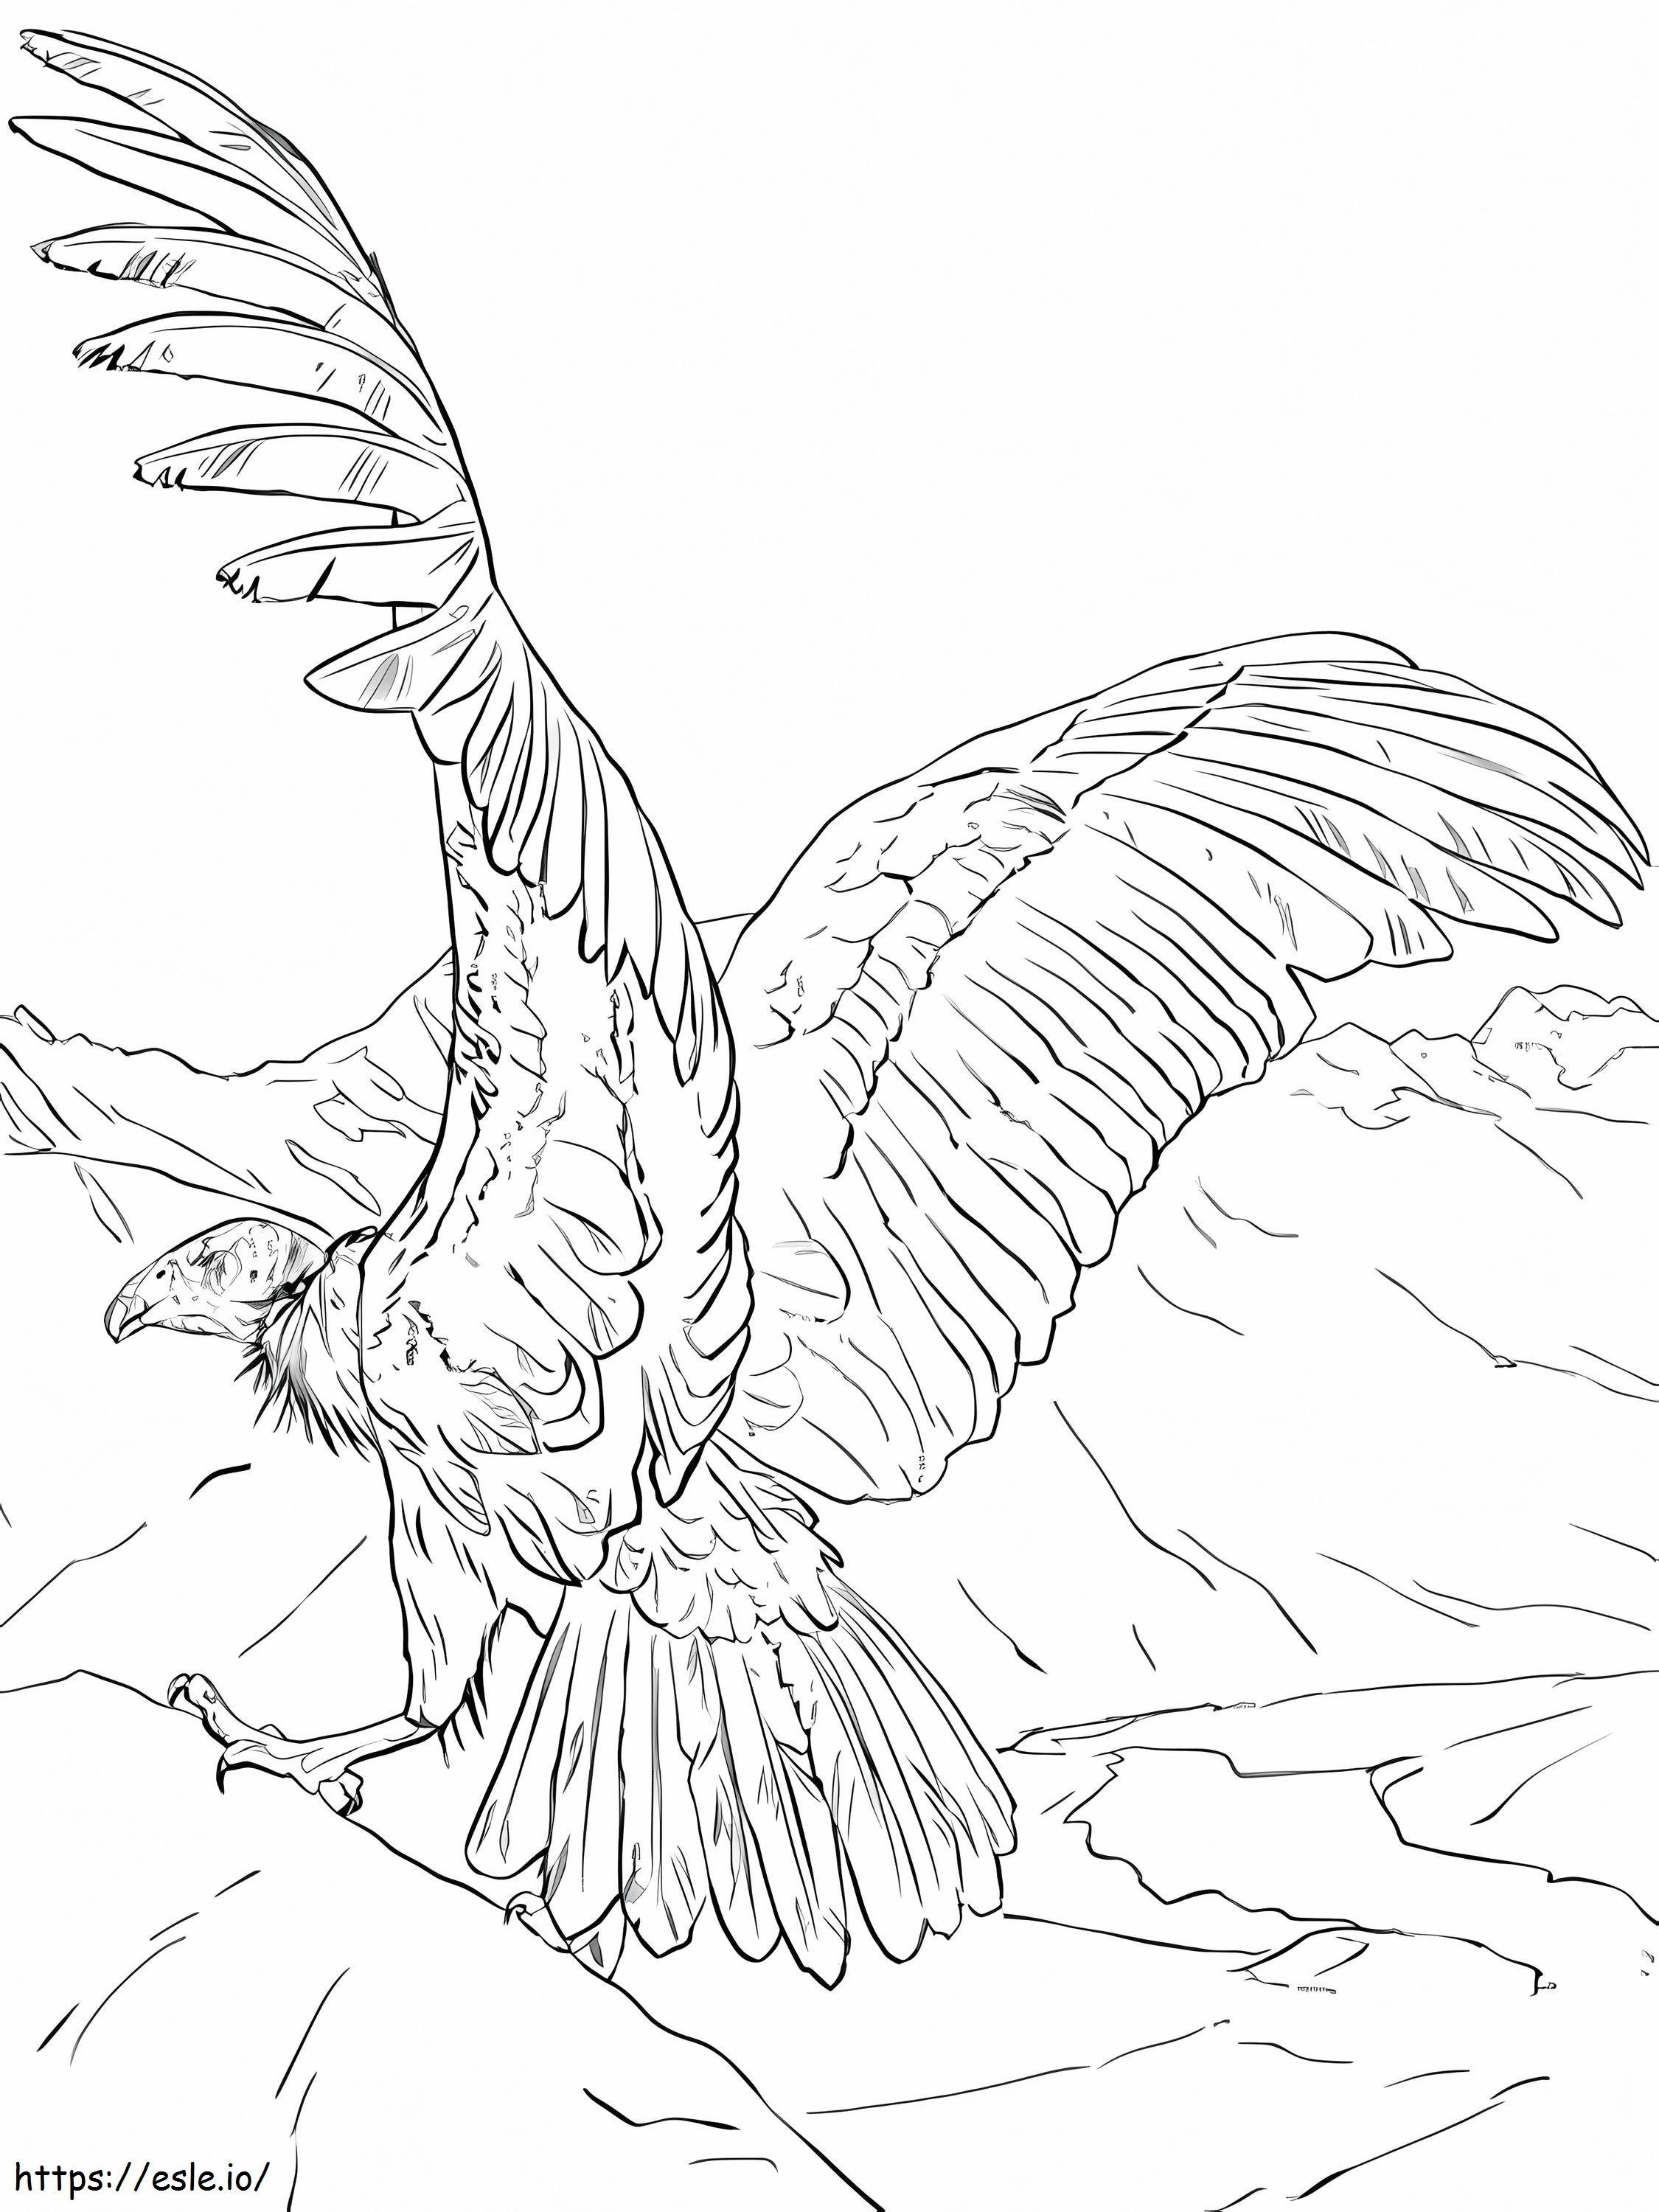 Good Condor coloring page